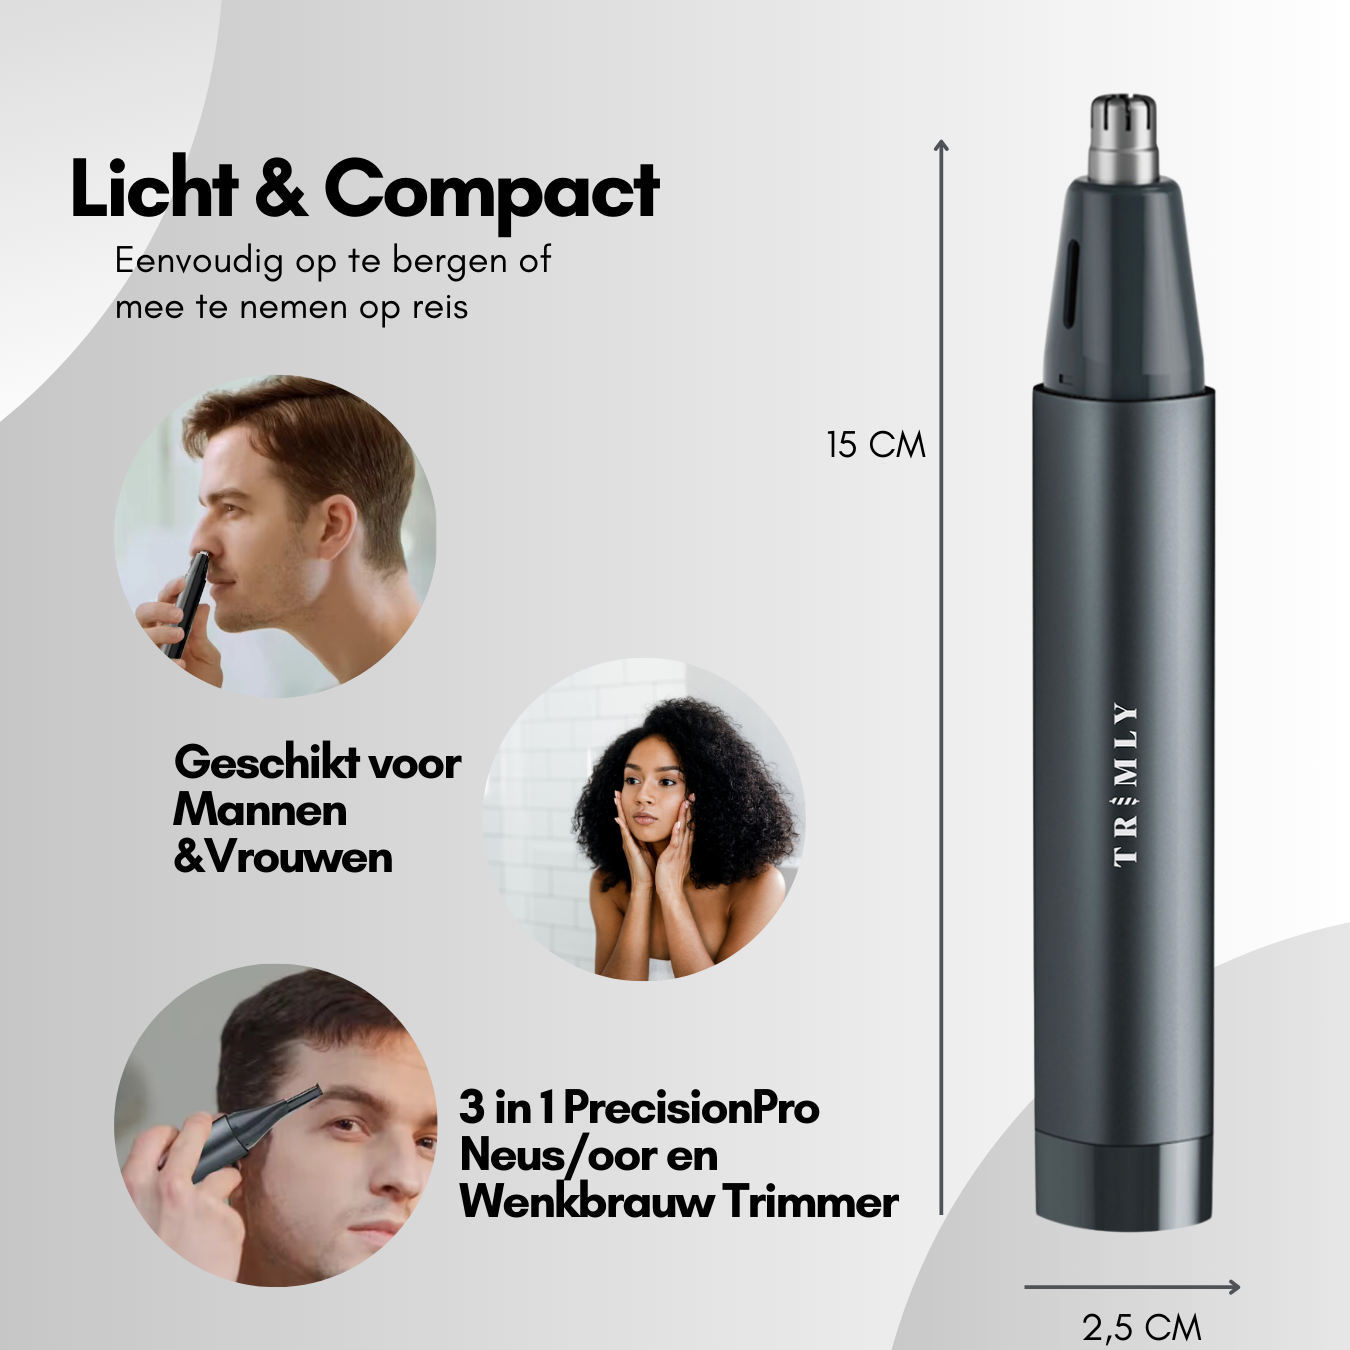 PrecisionPro neus en oorhaar wenkbrauw trimmer van Trimly oplaadbare neustrimmer licht en compact